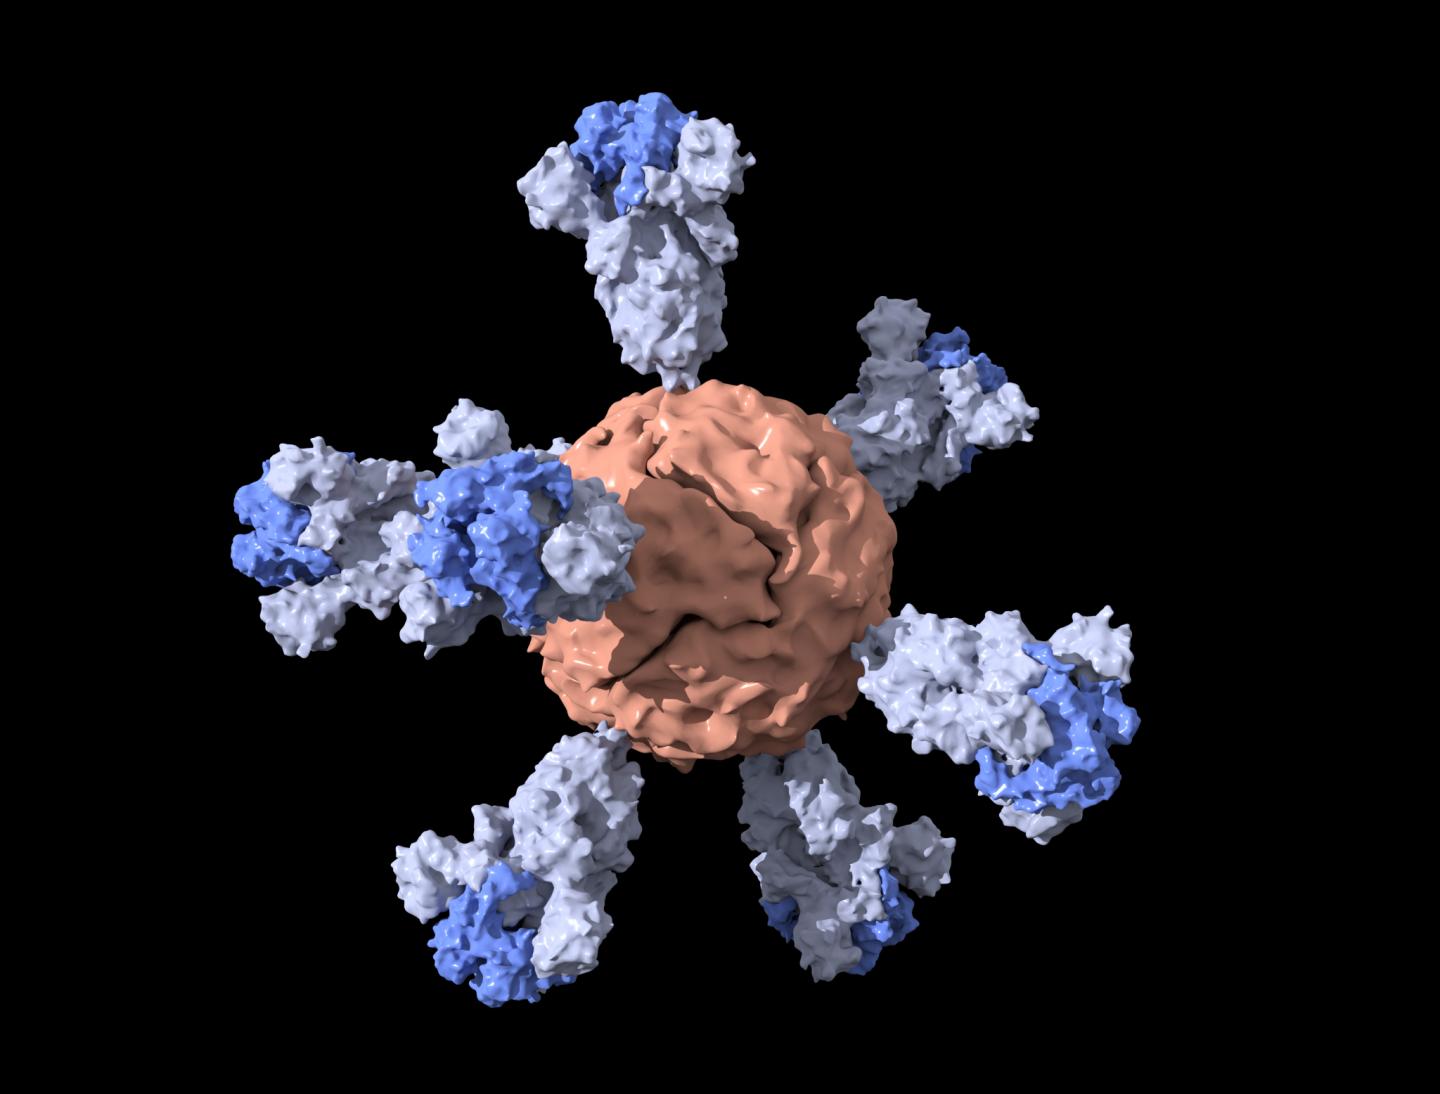 Vaccine nanoparticle